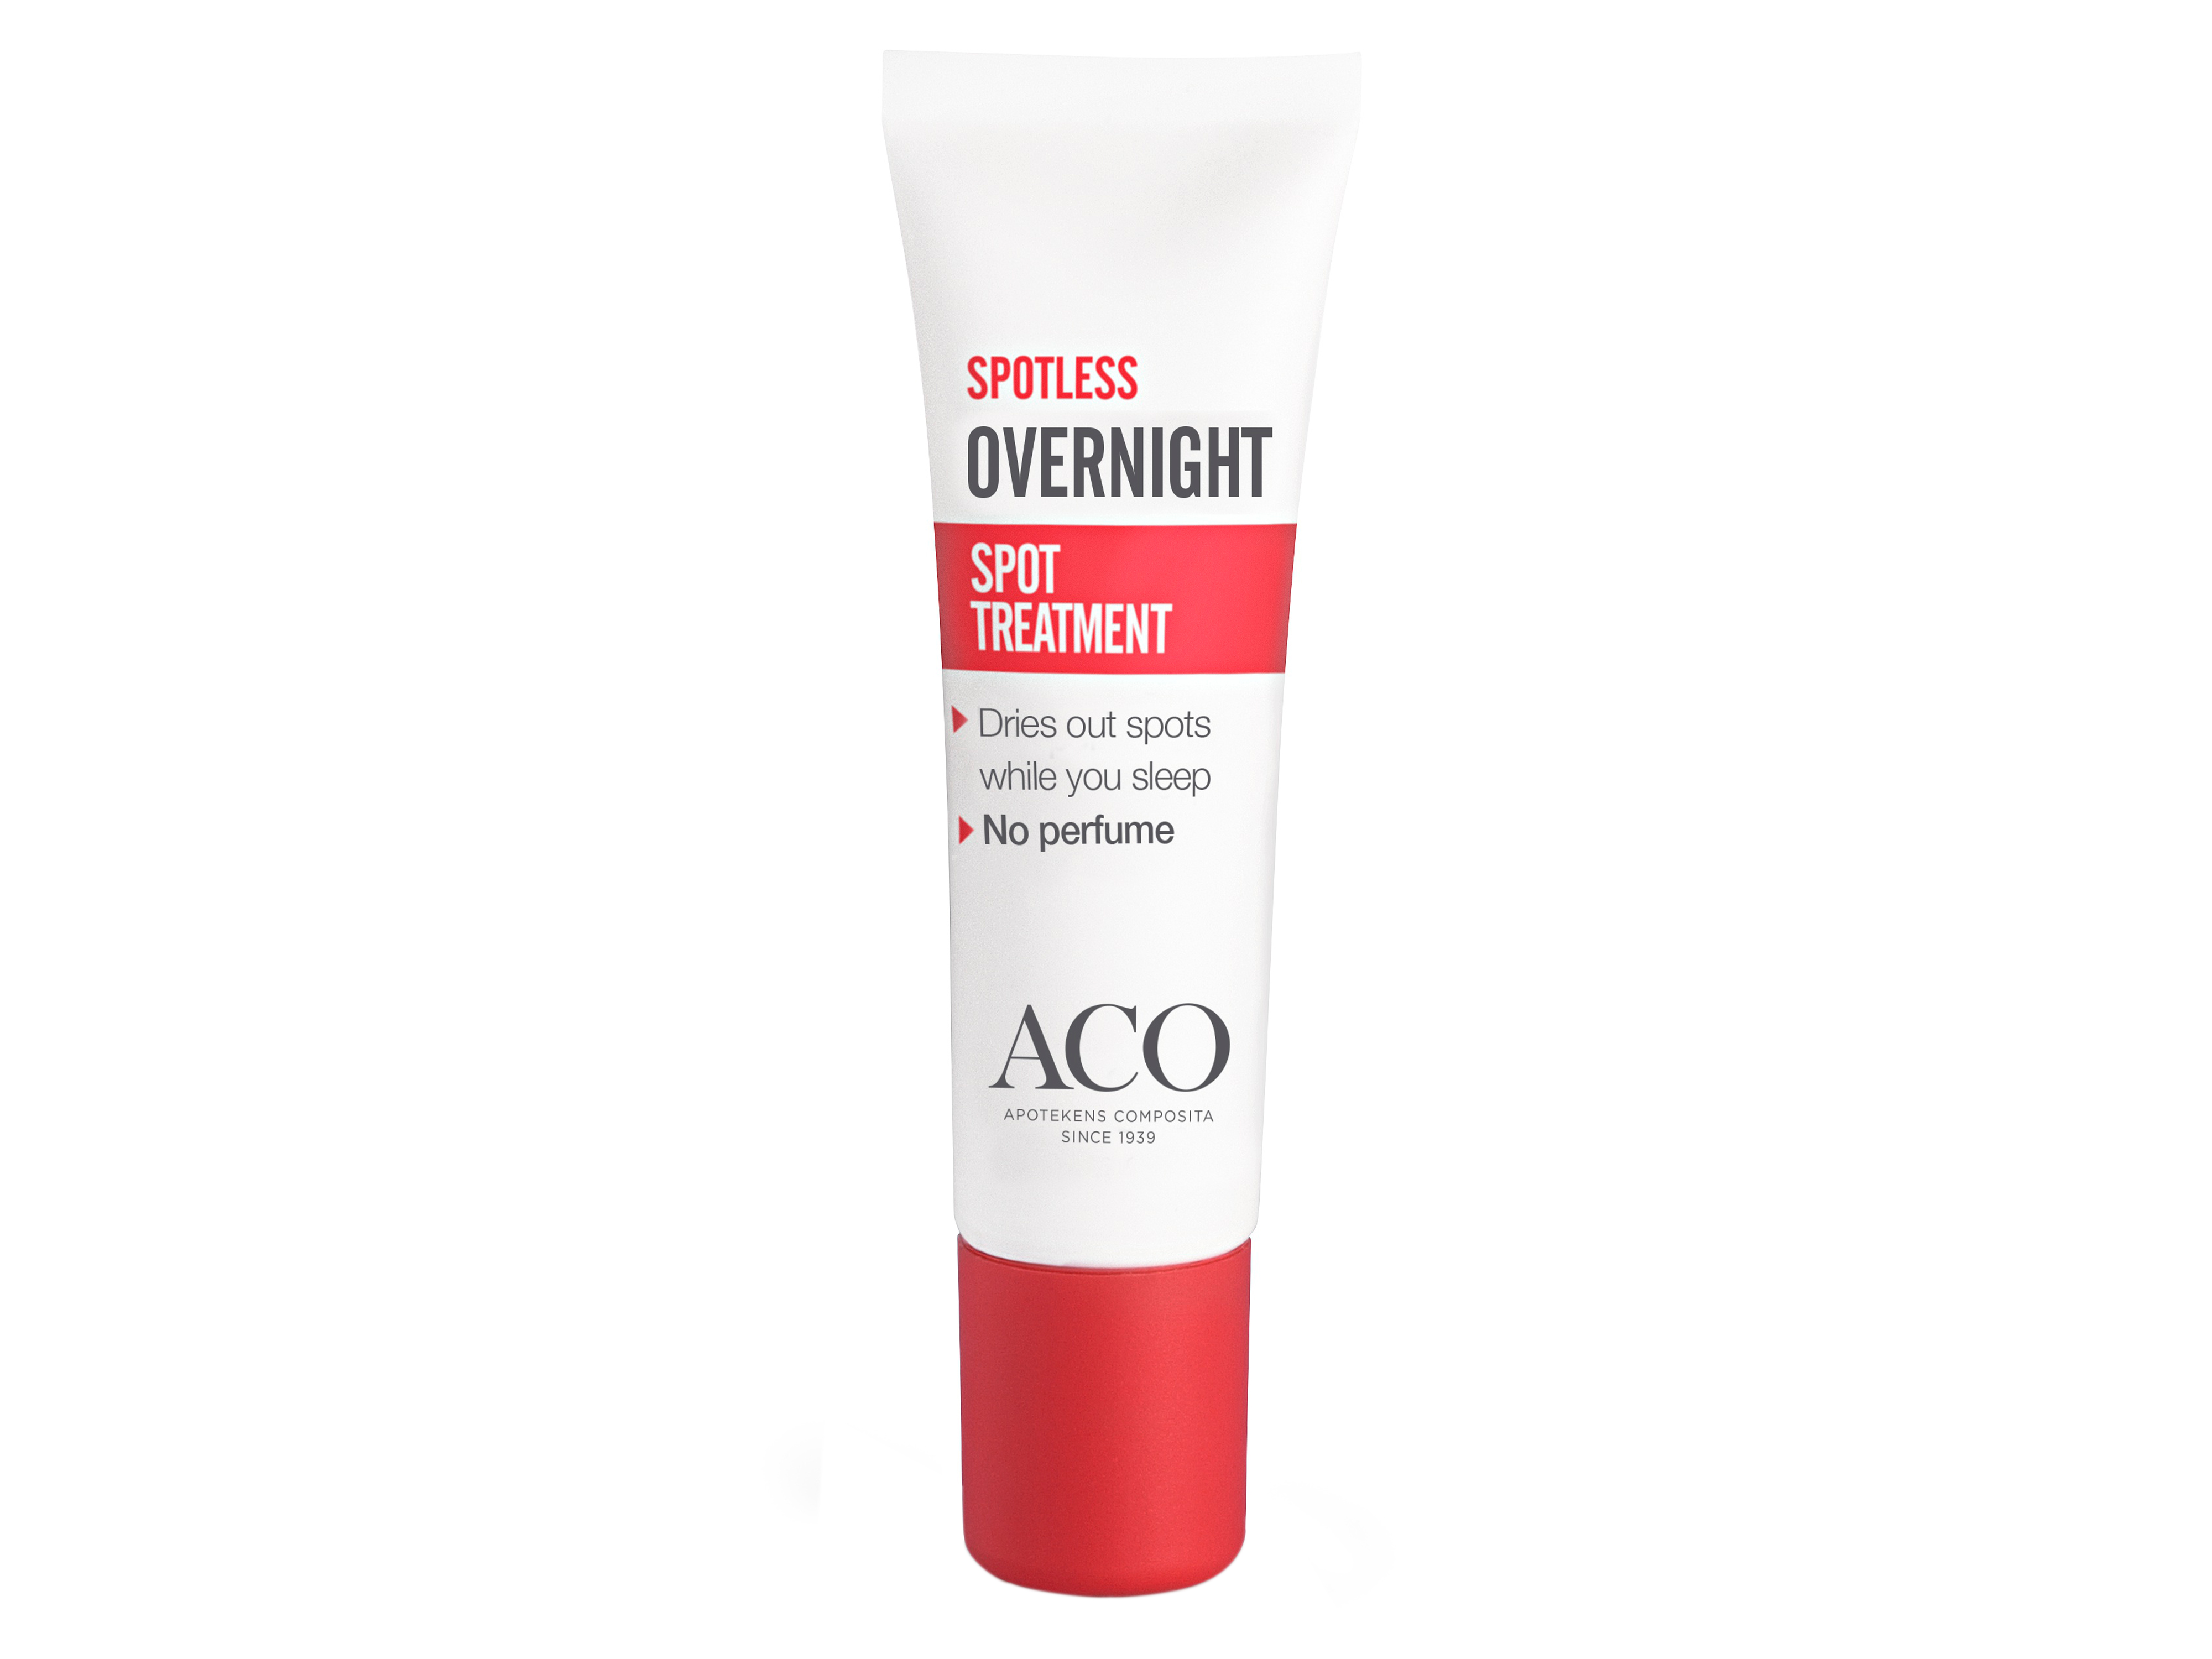 ACO Aco Spotless Overnight Treatment, 10 ml